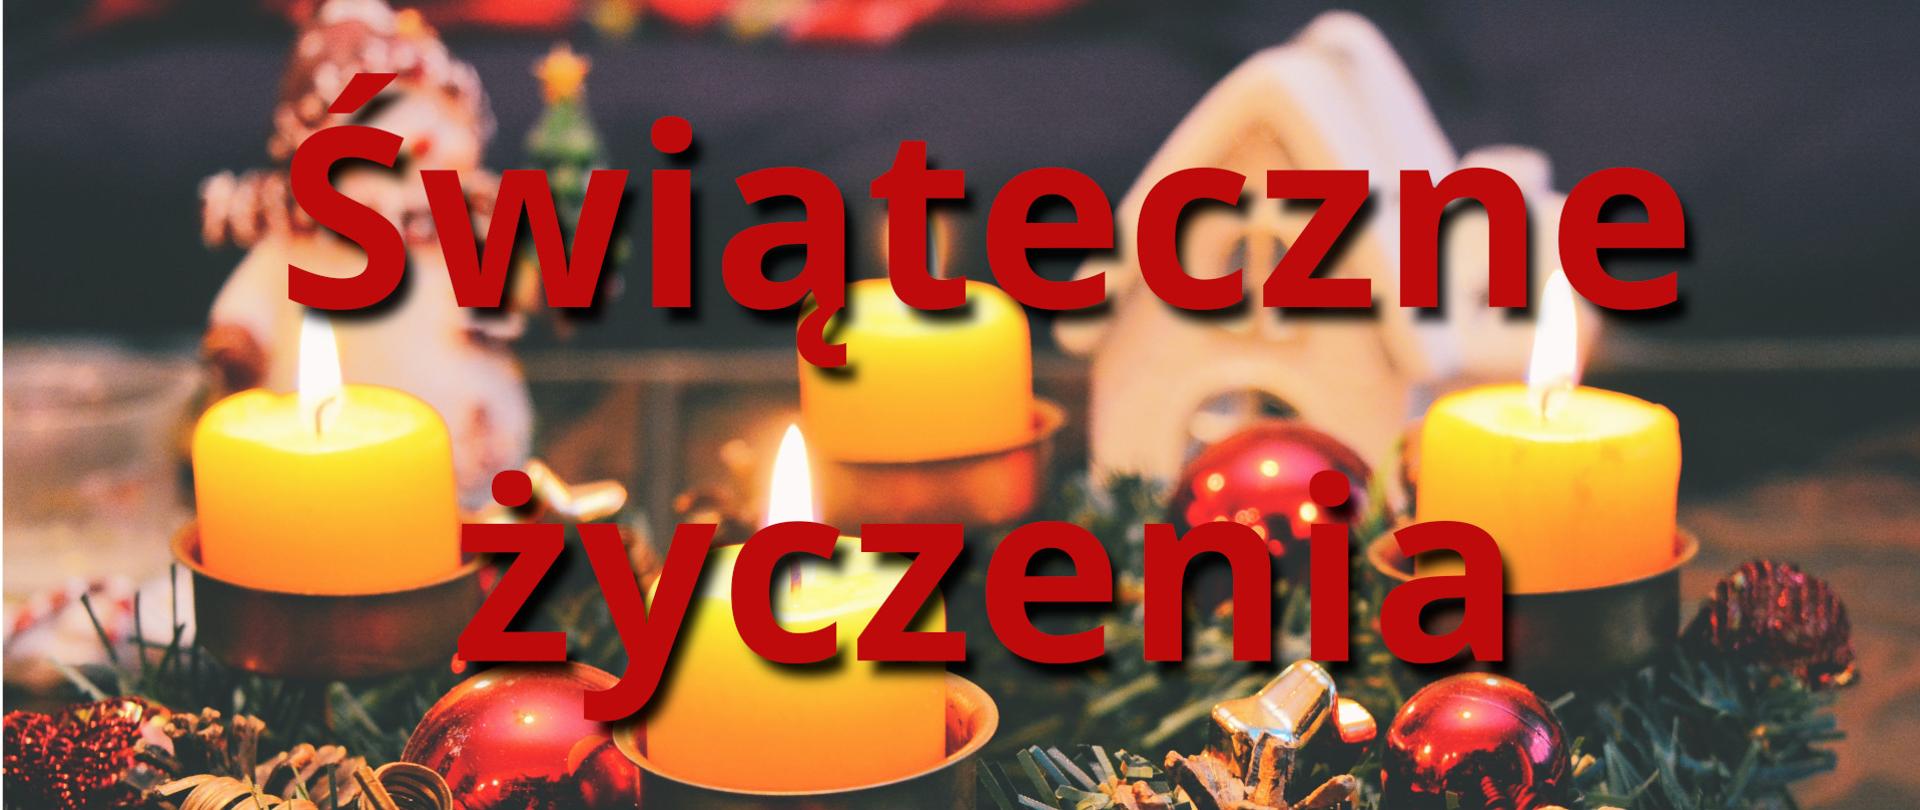 Ilustracja przedstawia duży czerwony napis świąteczne życzenia. W tle znajduje się świąteczny stroik z bombkami i czterema żółtymi palącymi się świeczkami oraz figurka bałwanka, a także ceramiczny biały domek.